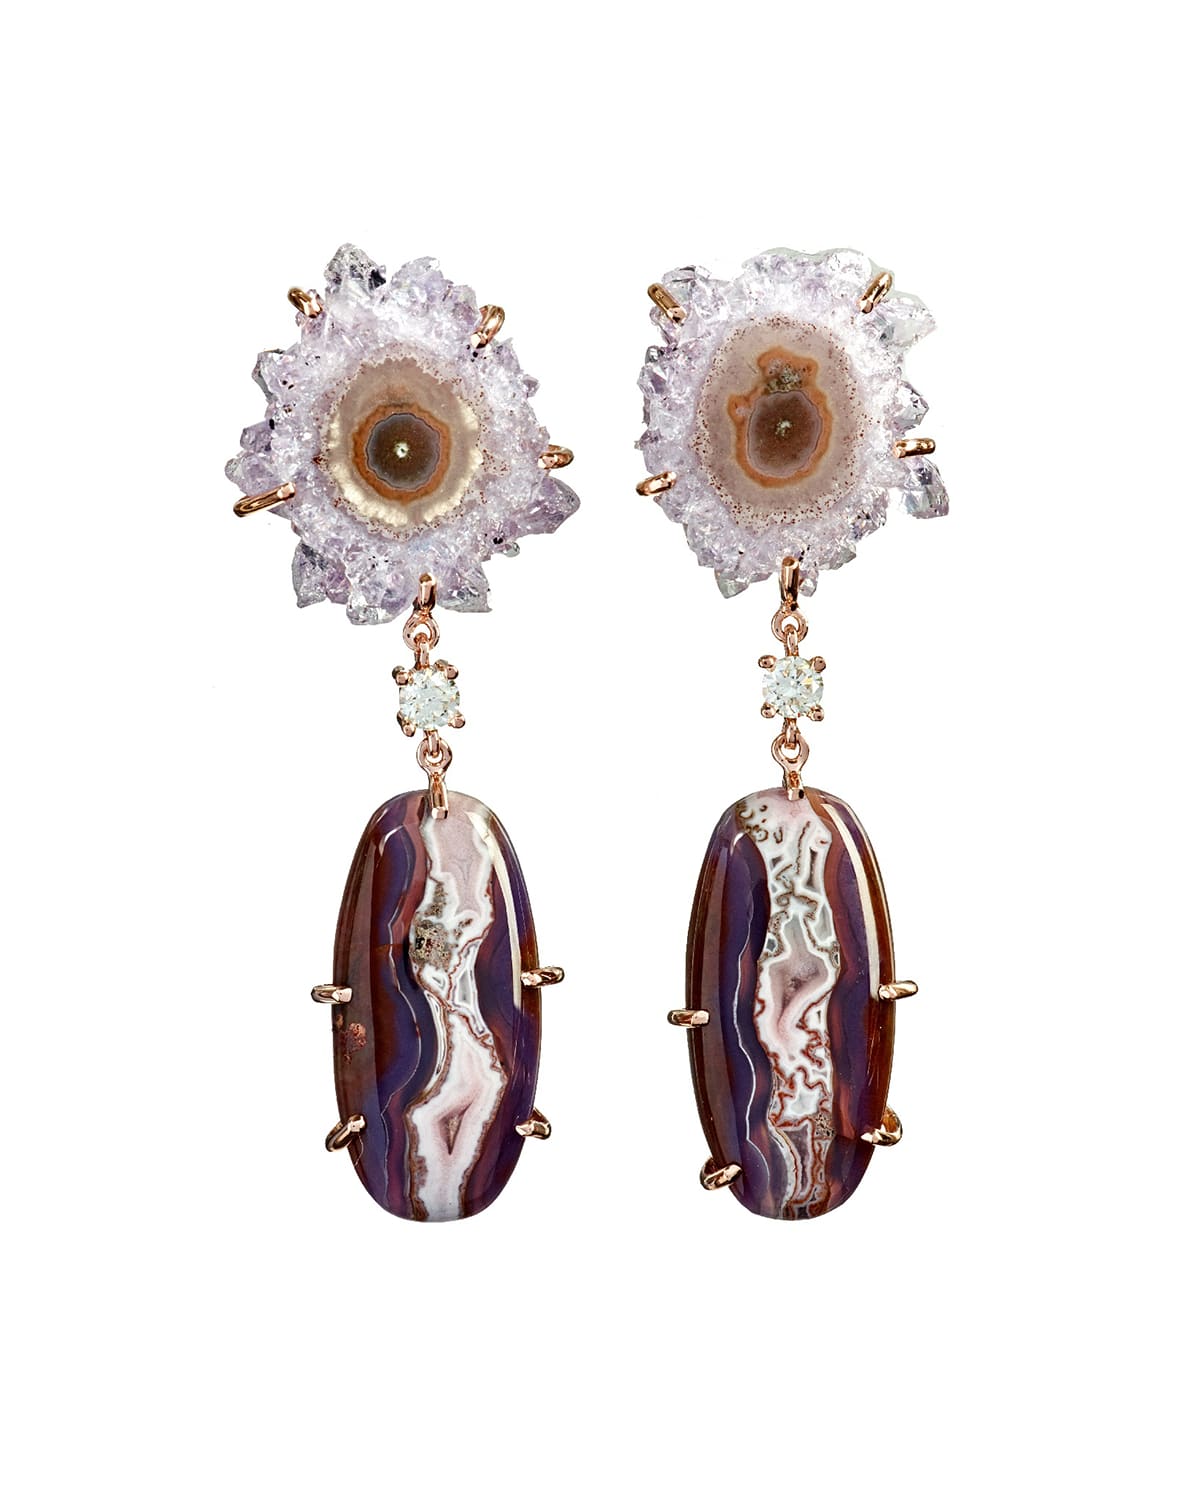 Jan Leslie 18k Bespoke 2-tier One-of-a-kind Luxury Earrings W/ Stalactite, Purple Passion & Diamonds